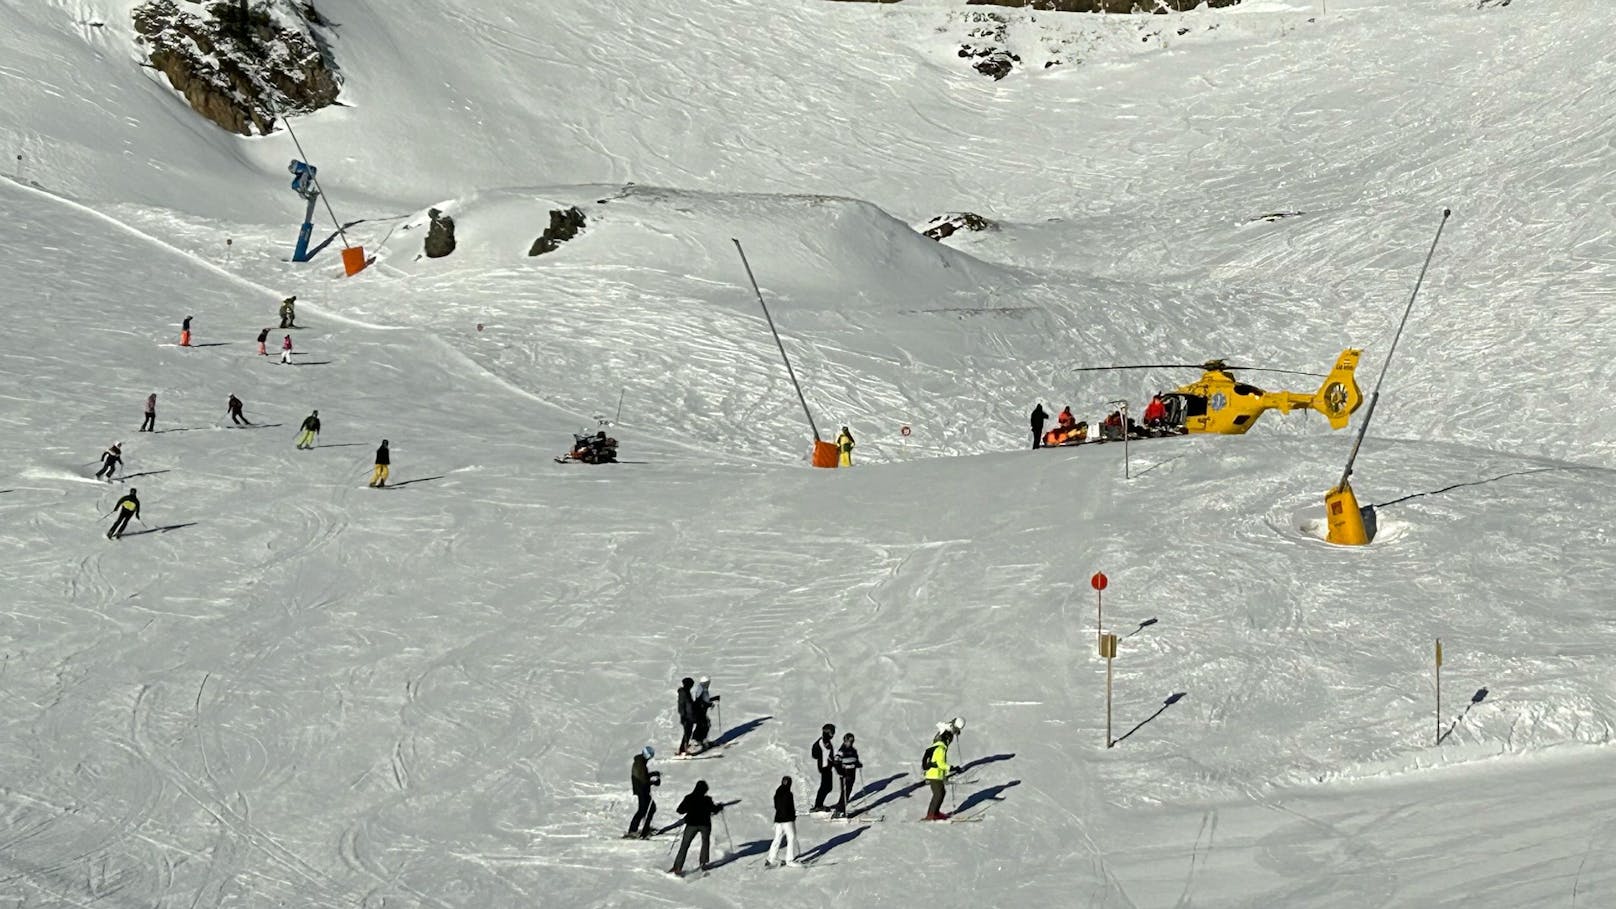 14-jähriges Mädchen stirbt bei Ski-Unfall in Tirol